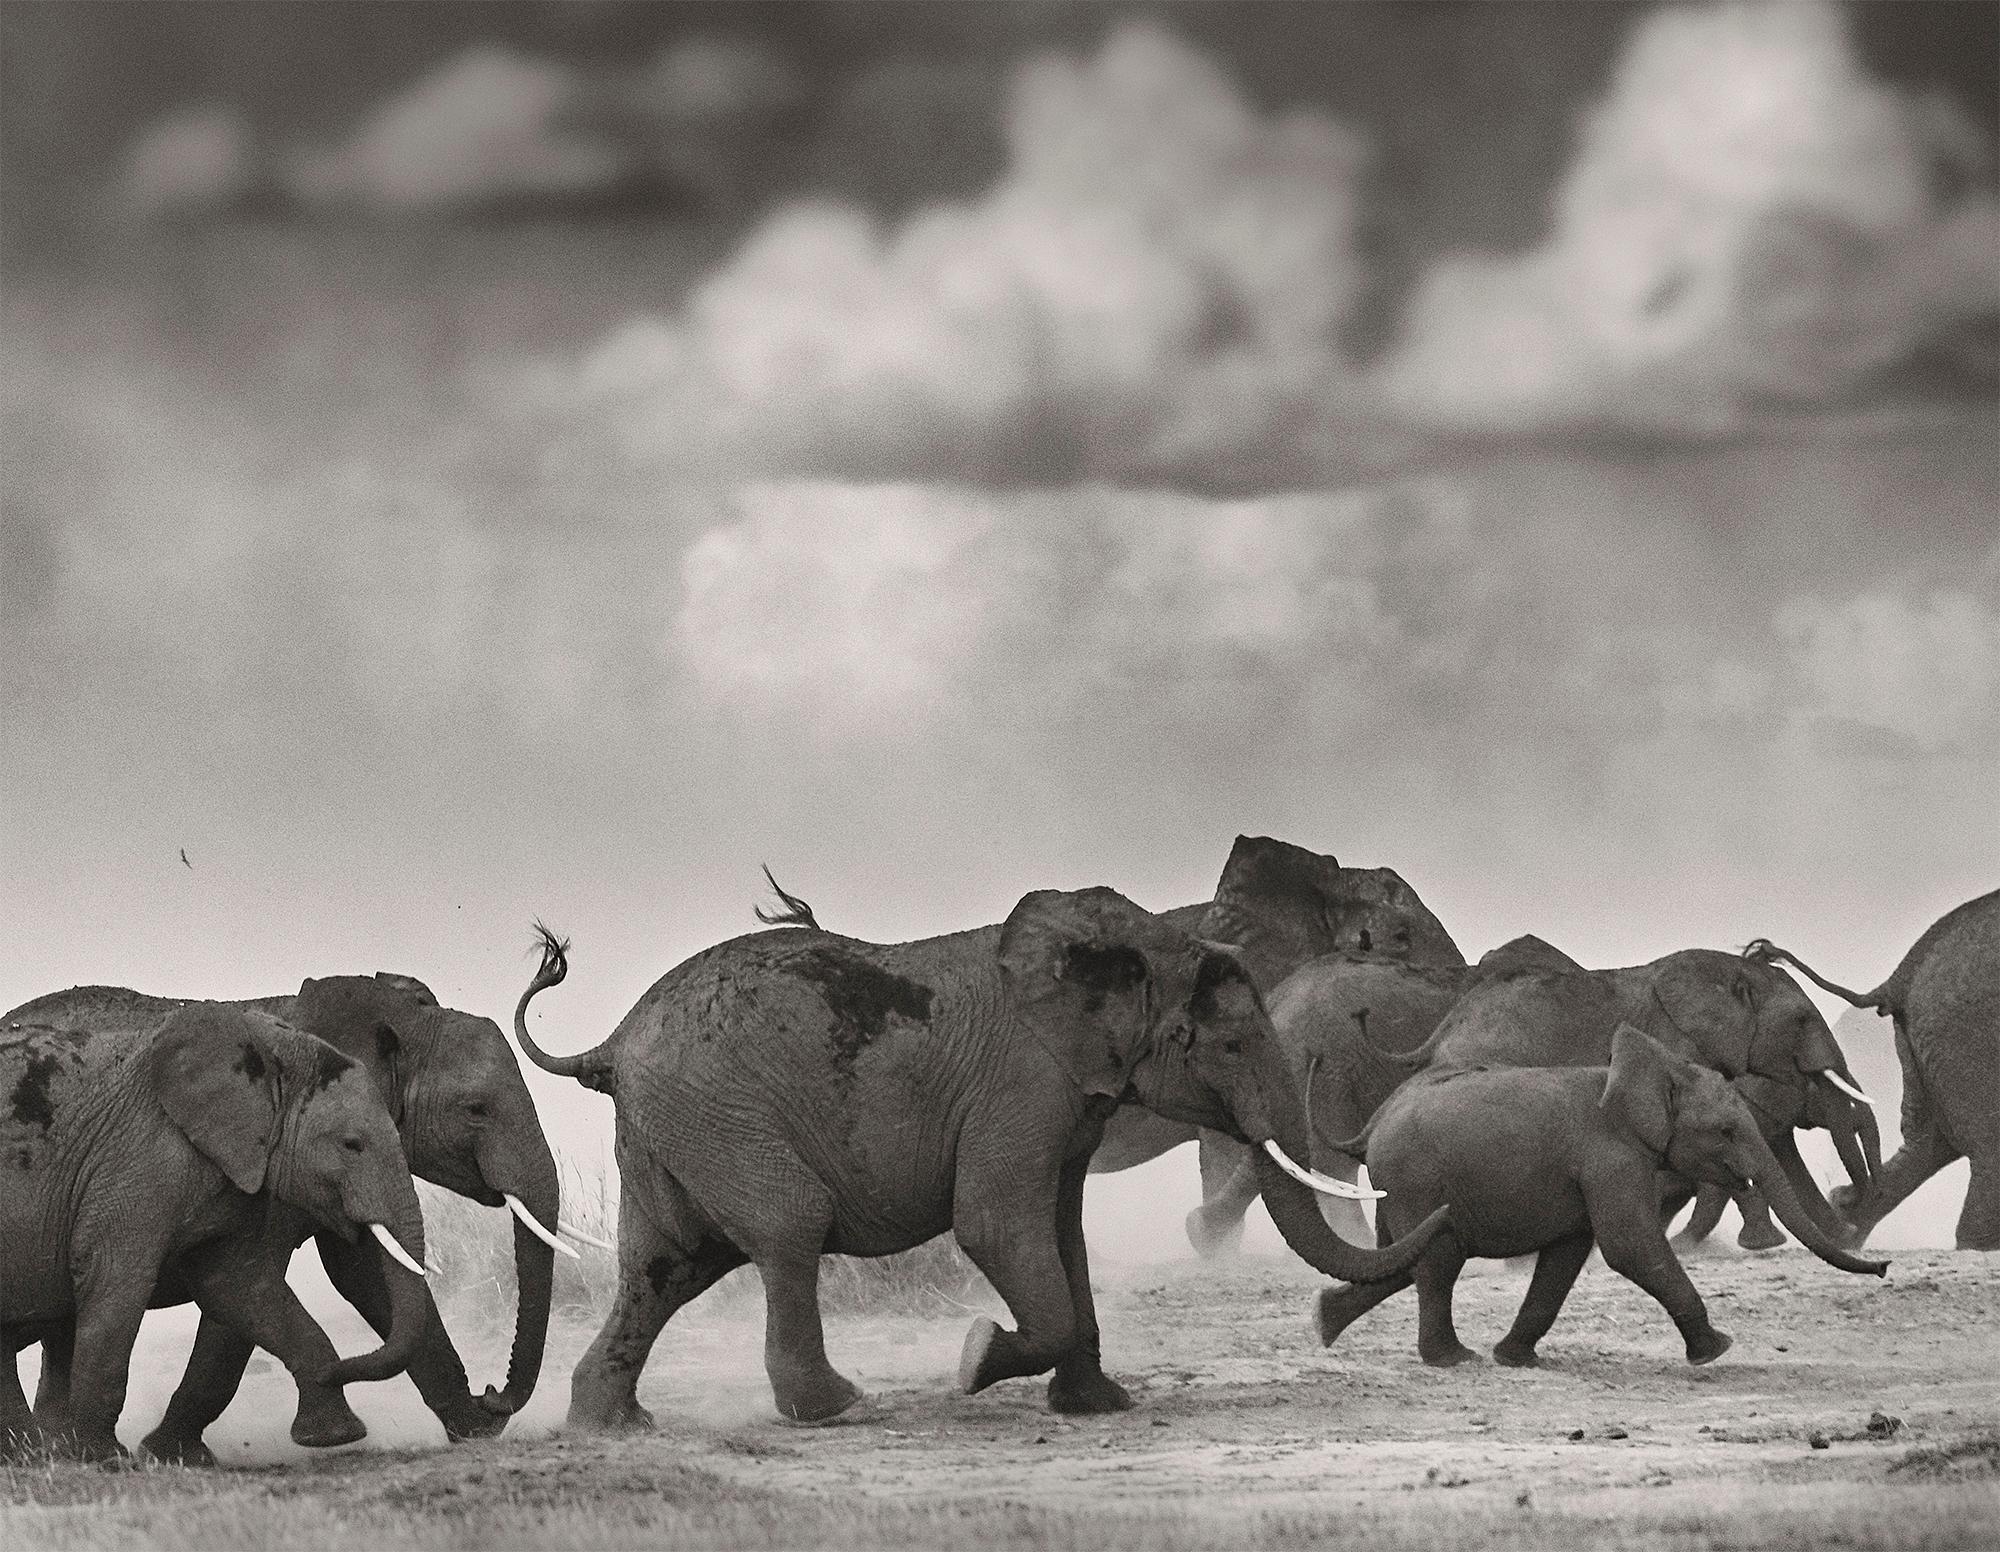 Thunderstorm, Kenya, Elefant, Fotografie, Platin Palladium, Landschaft (Grau), Black and White Photograph, von Joachim Schmeisser